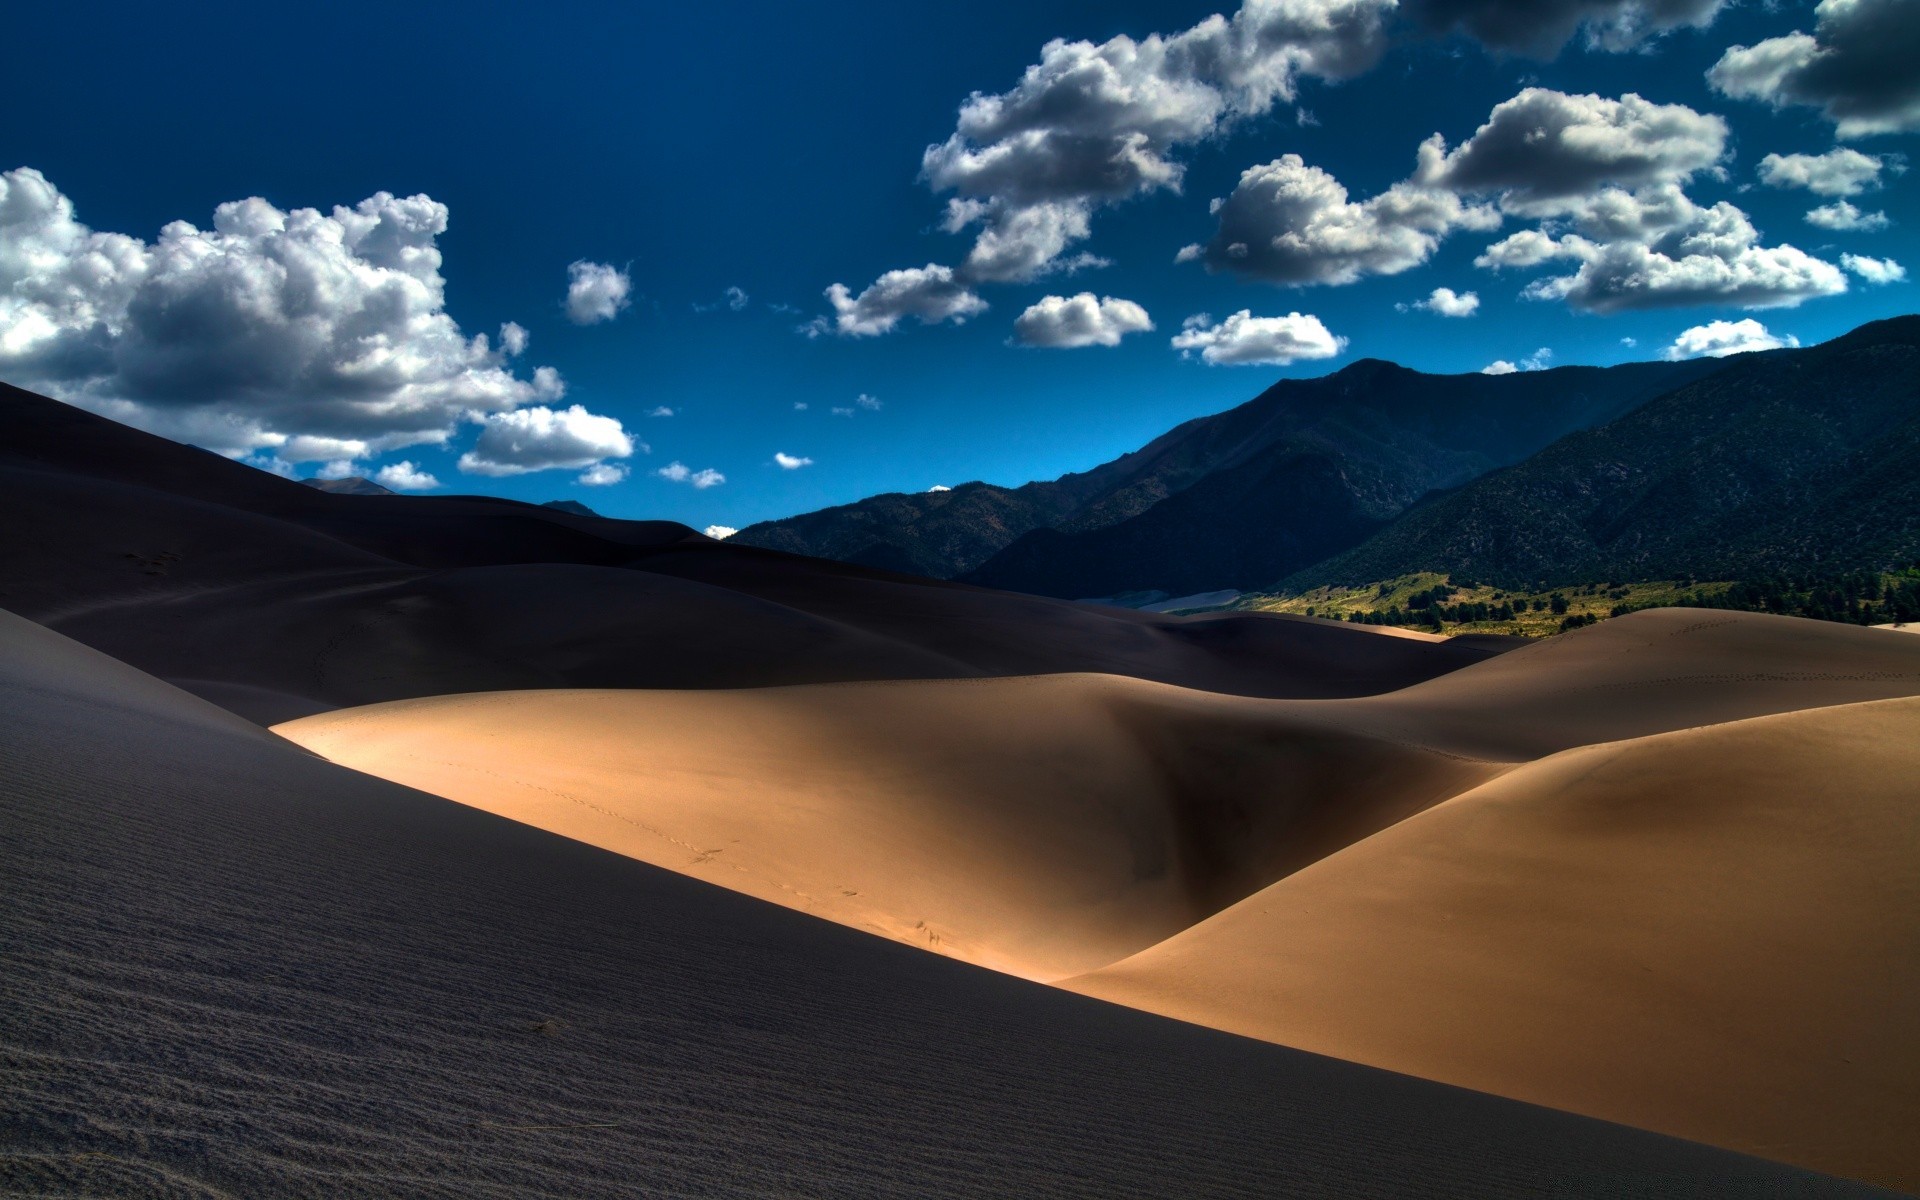 америка пустыня дюна песок бесплодной пейзаж арид путешествия приключения закат сухой горячая рассвет небо дистанционное холм один природа